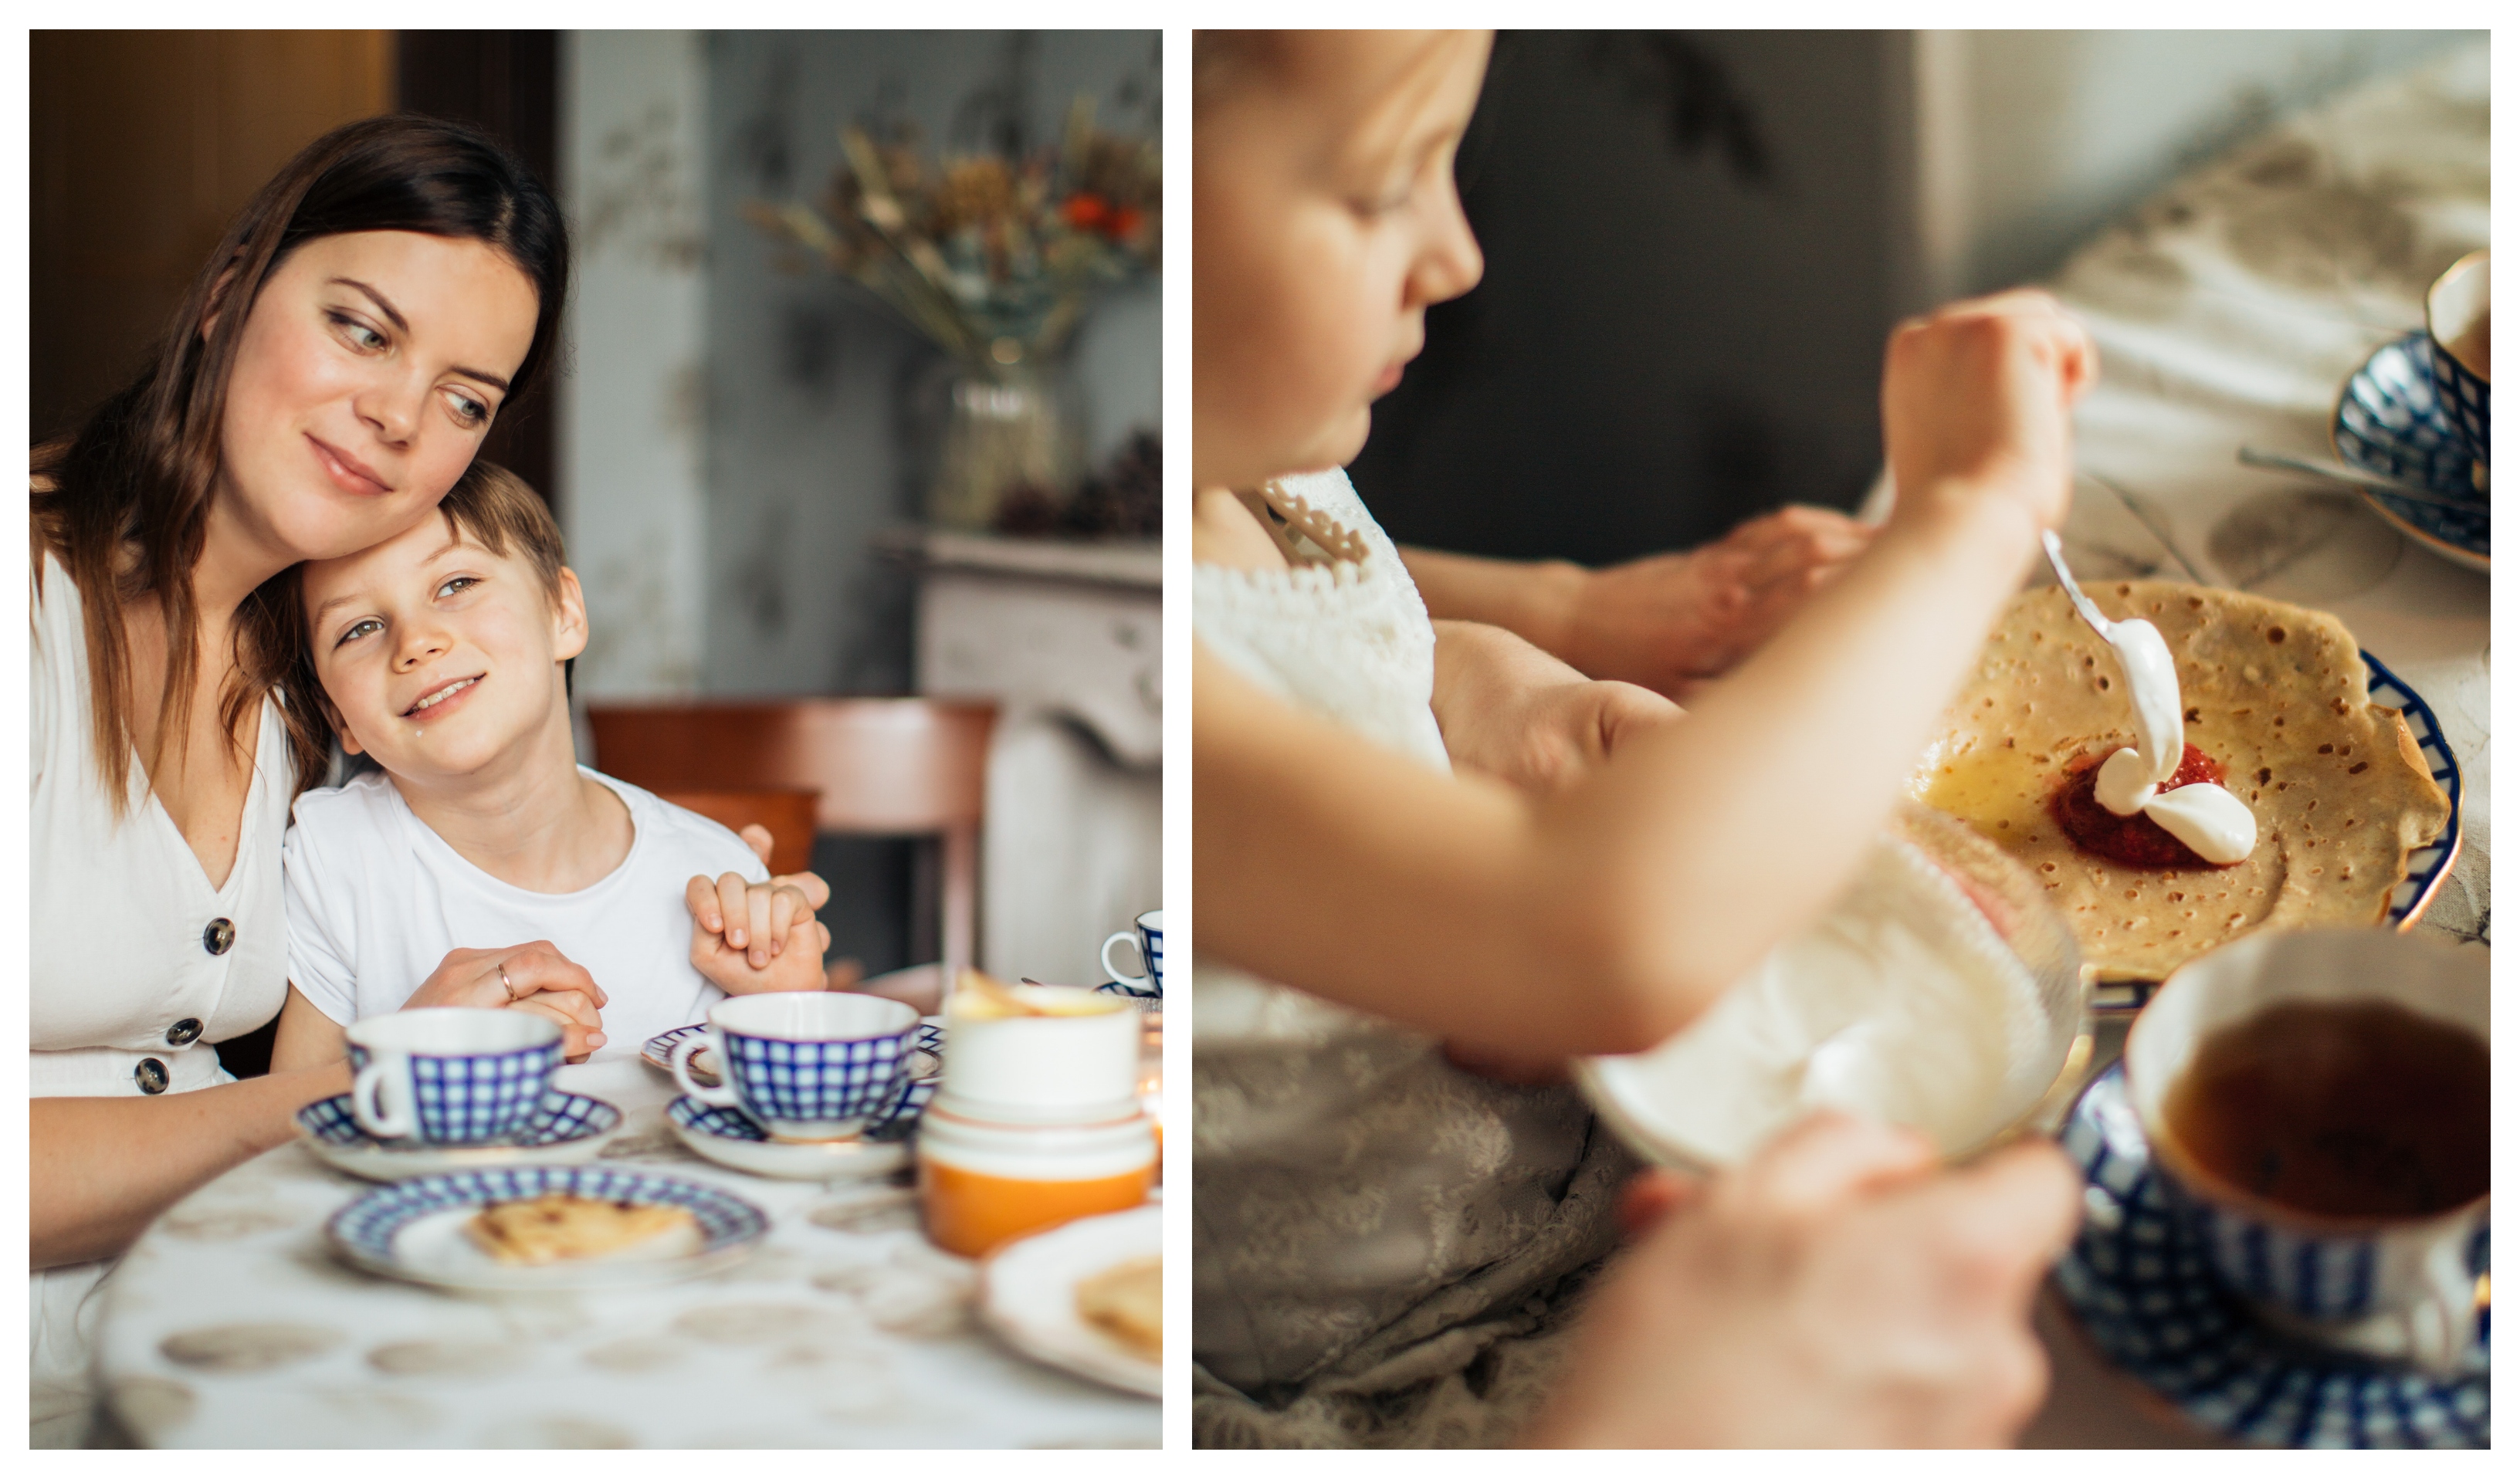 Raňajky by mali byť spoločným časom s deťmi, aj cez týždeň.